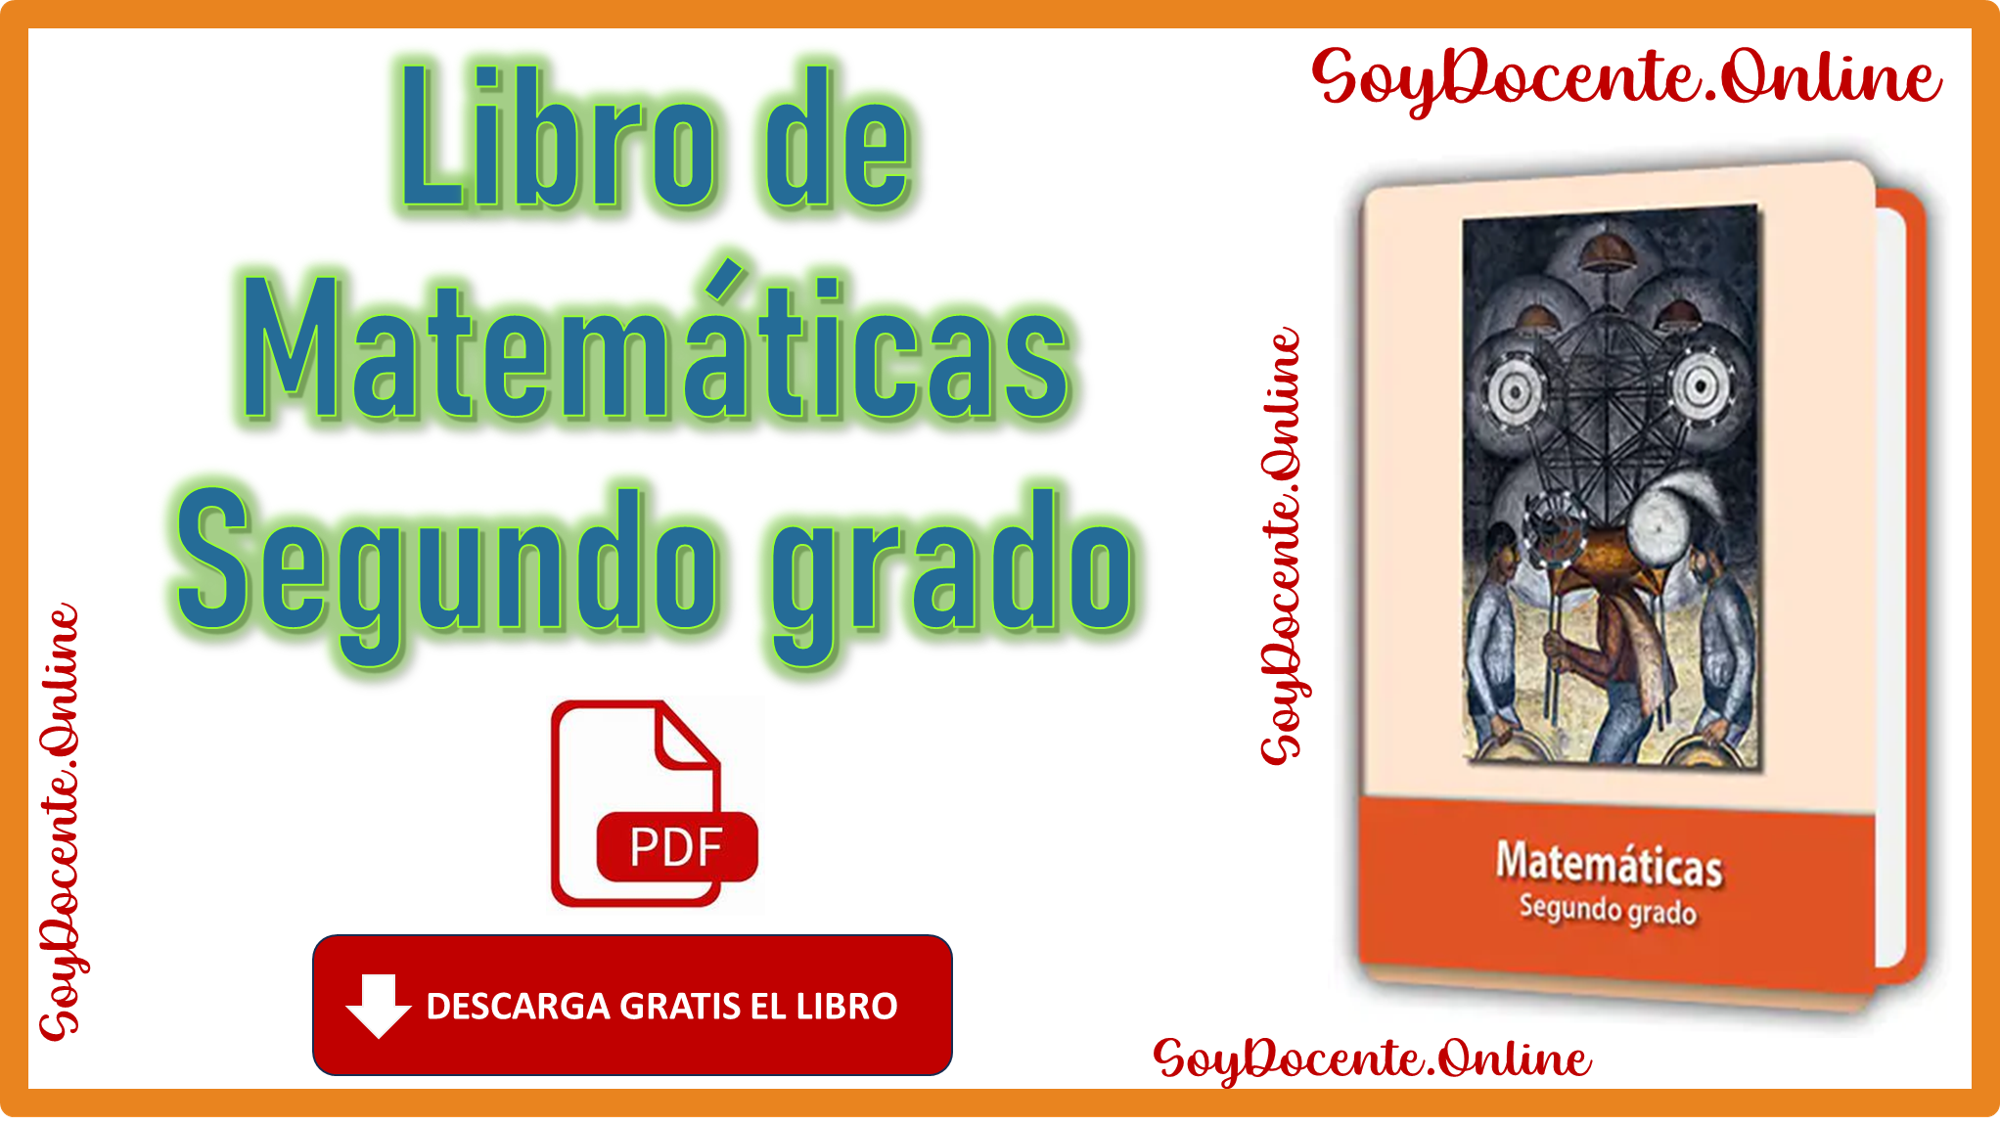 Ya puedes descargar gratis el Libro de Matemáticas segundo grado de Primaria de la SEP emitido por CONALITEG, en PDF.